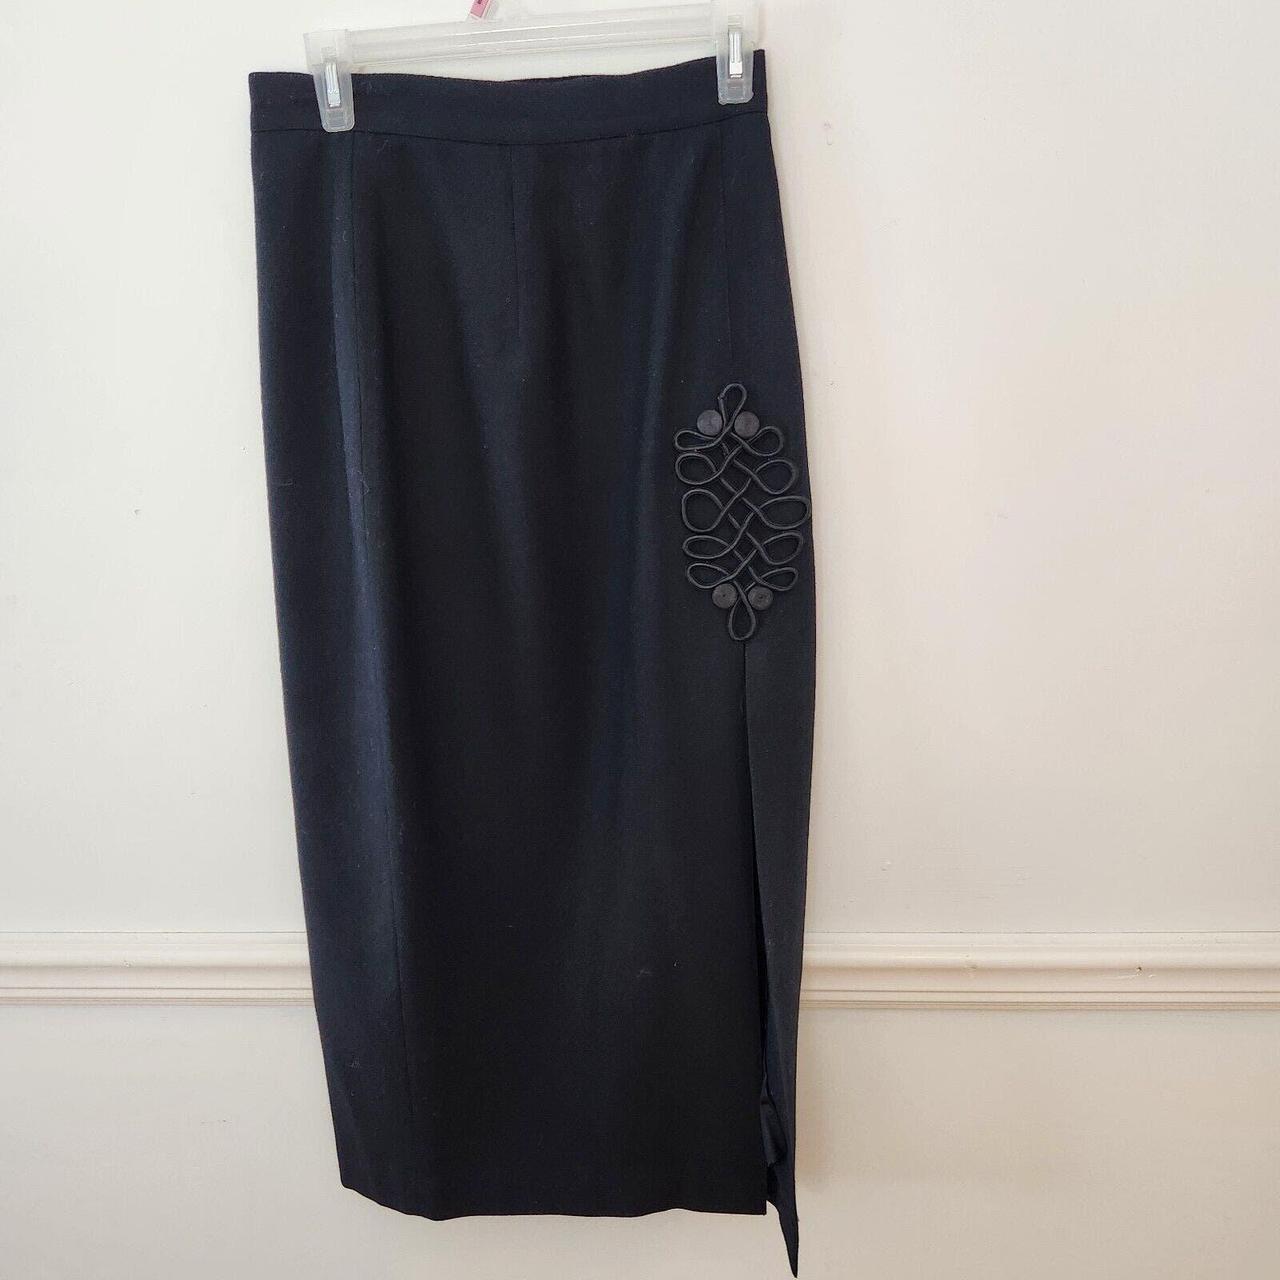 Vintage Alberto Makali Skirt Size 8 Womens Wool... - Depop